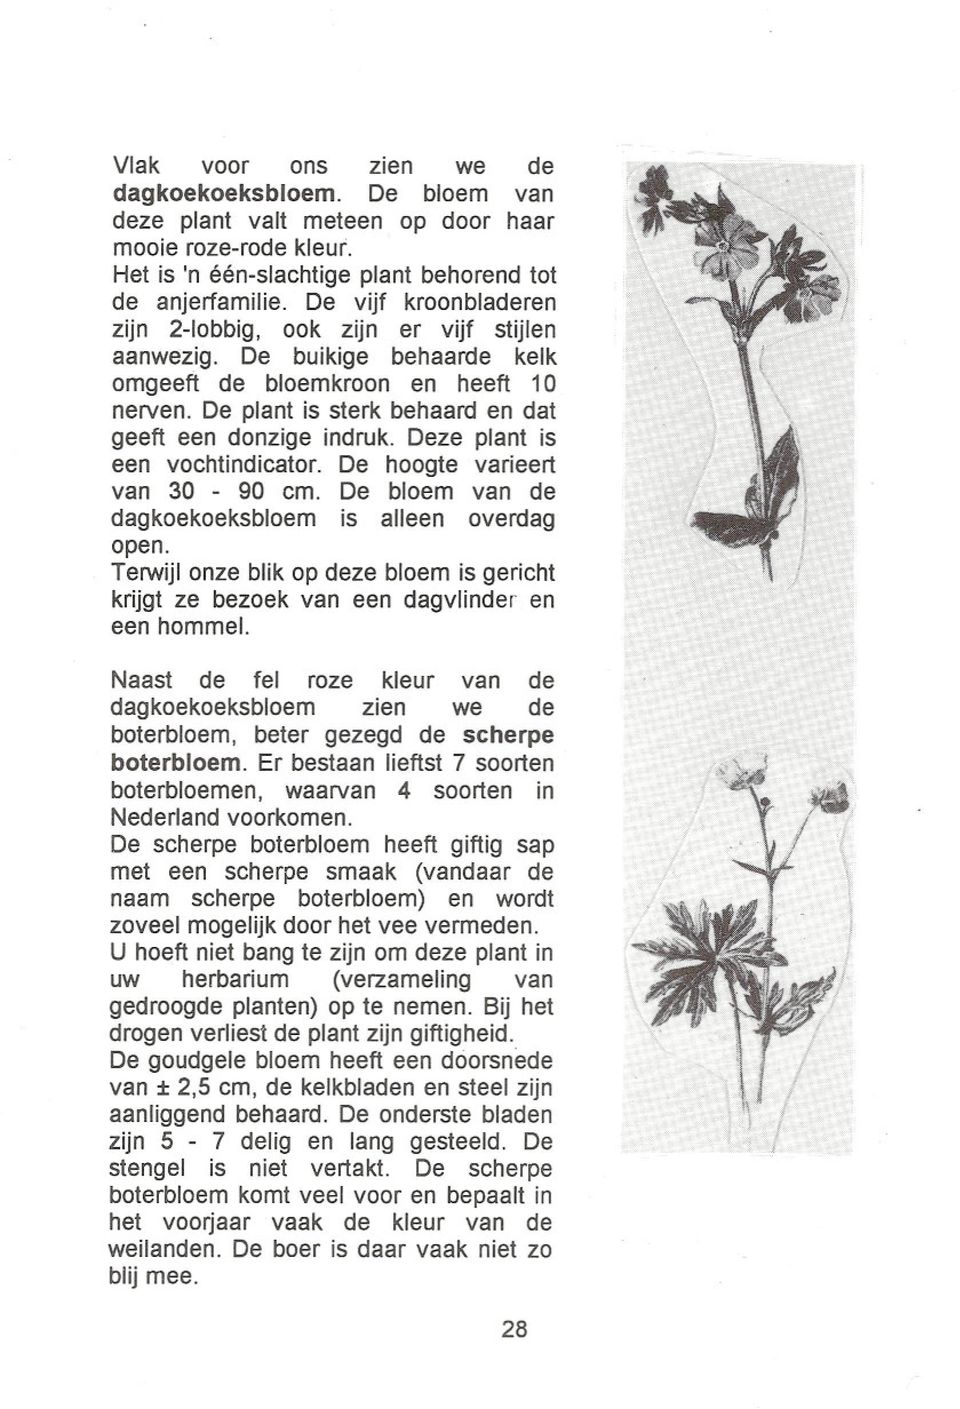 Deze plant is een vochtindicator. De hoogte varieert van 30-90 cm. De bloem van de dagkoekoeksbloem is alleen overdag open.